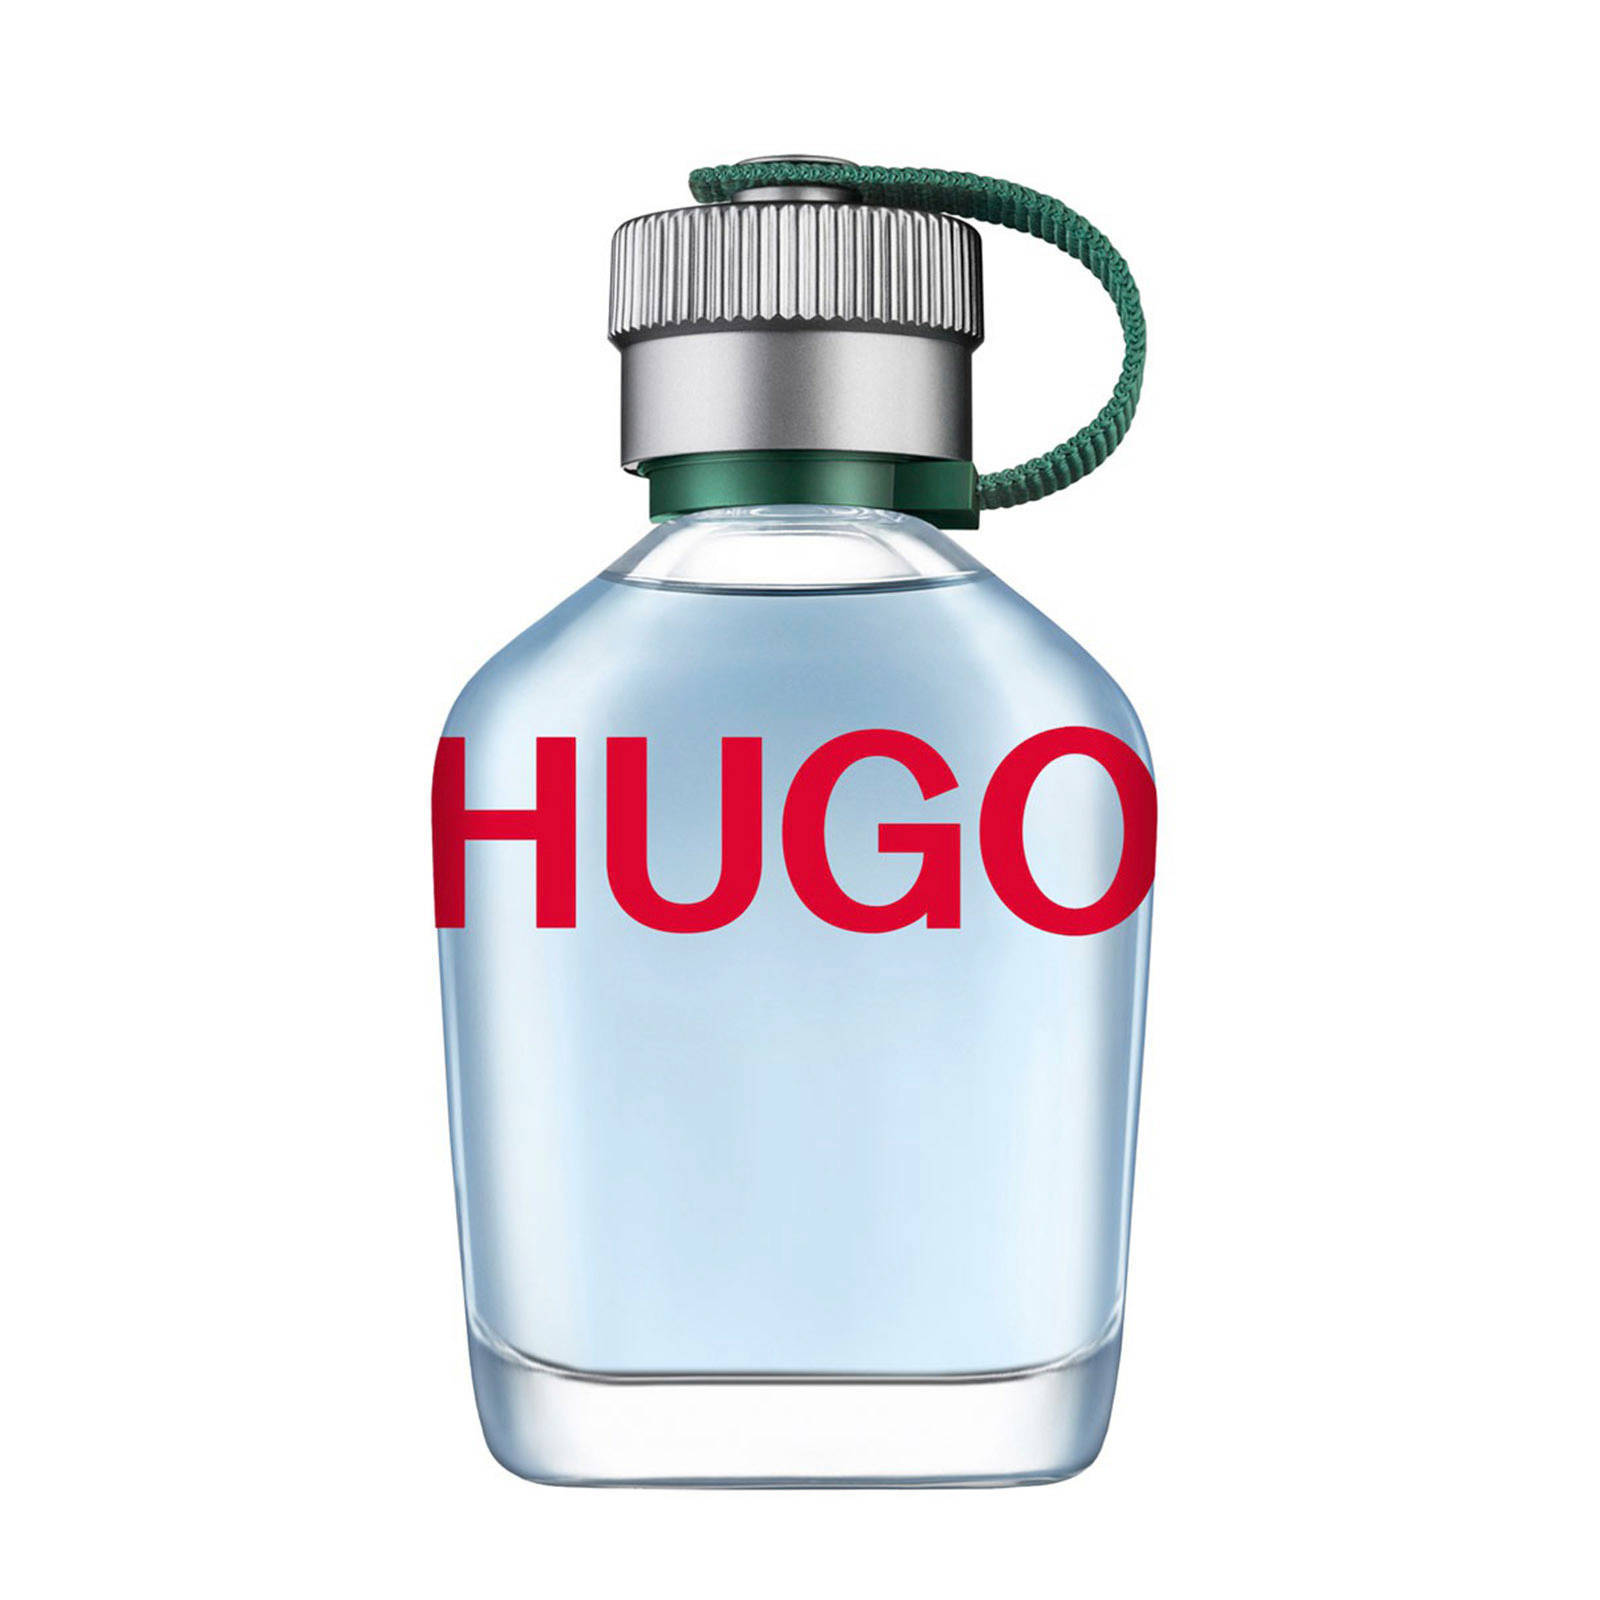 HUGO Man eau de toilette - 75 ml | wehkamp